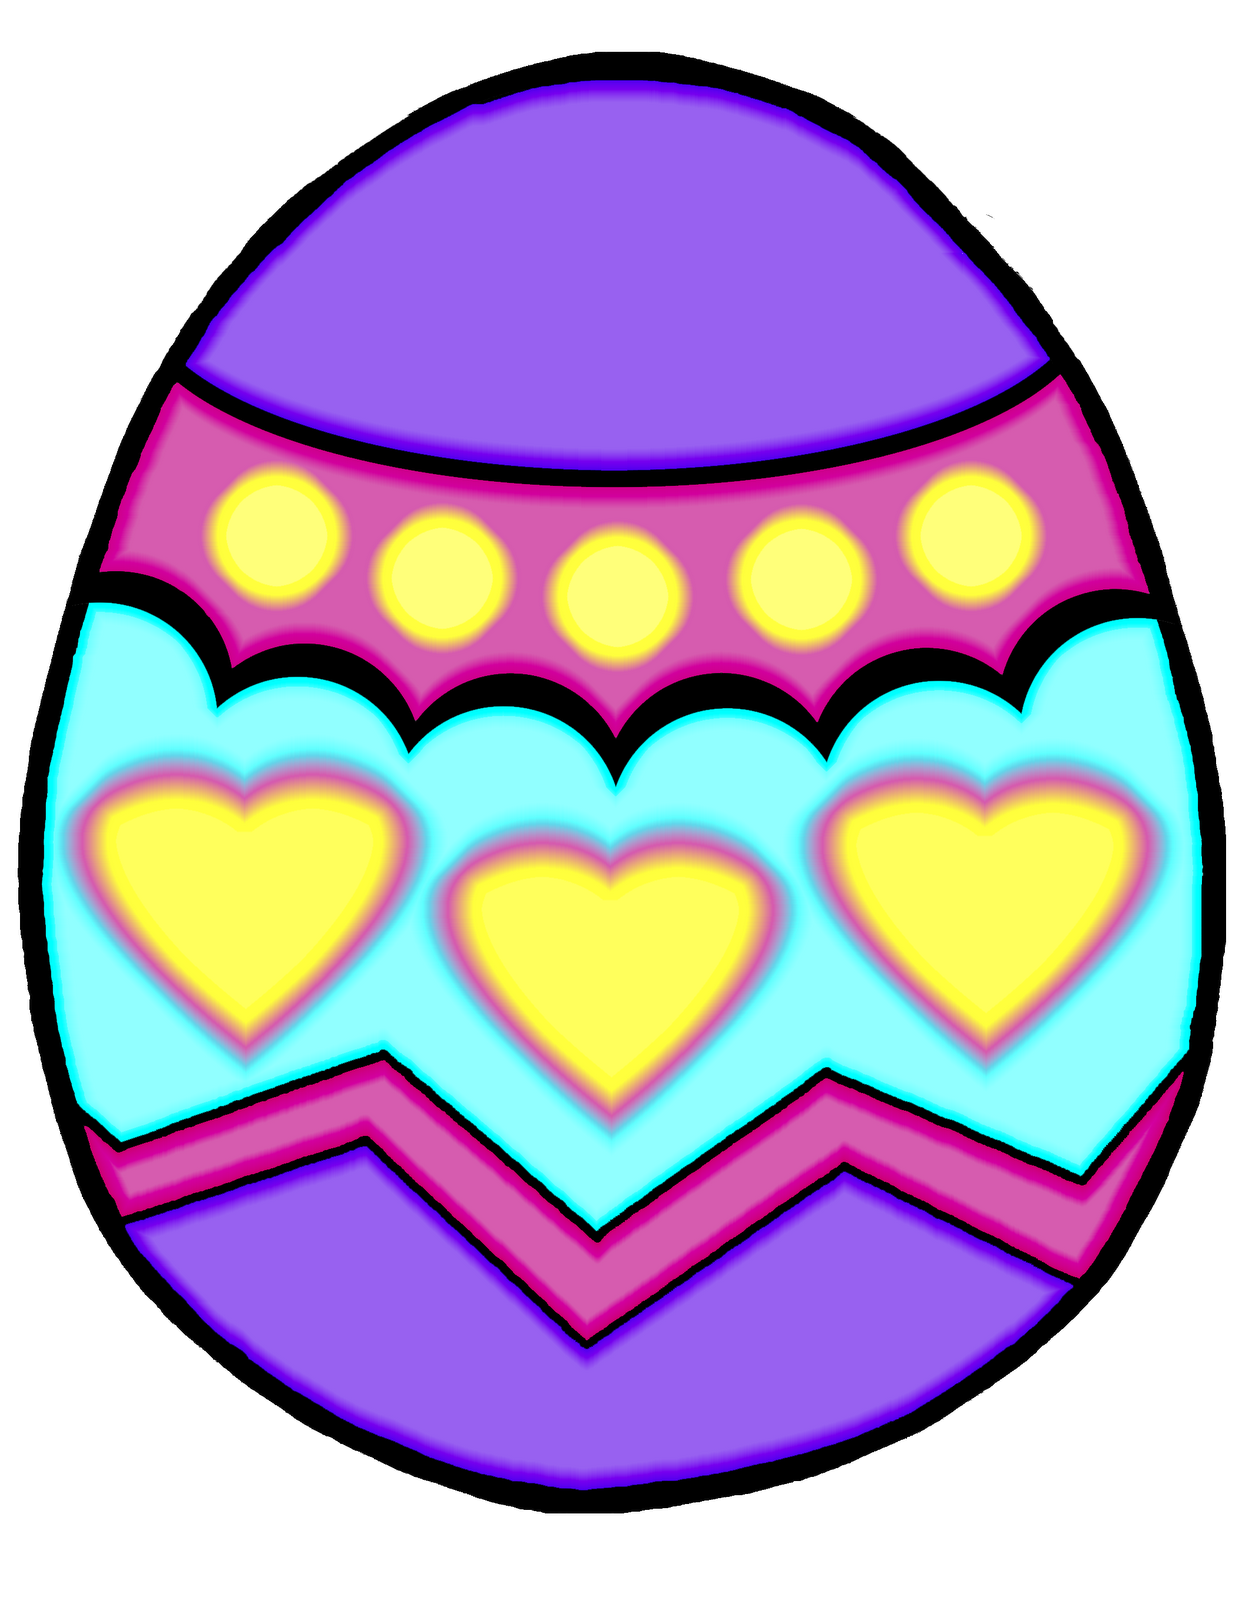 Easter Egg Design Clip Art - ClipArt Best